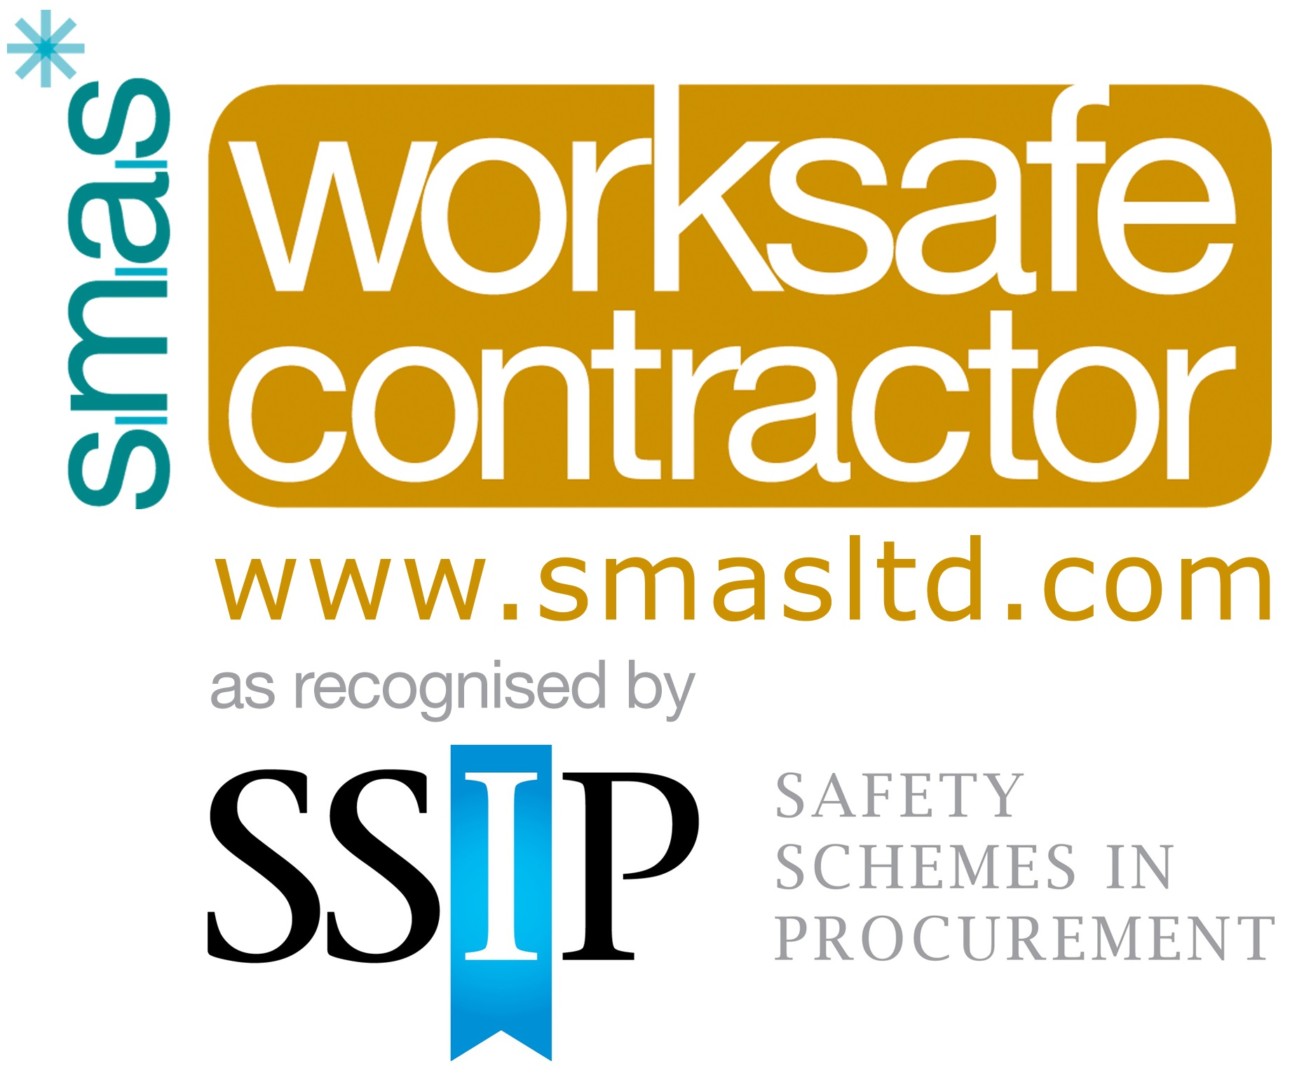 WorkSafe Contractor